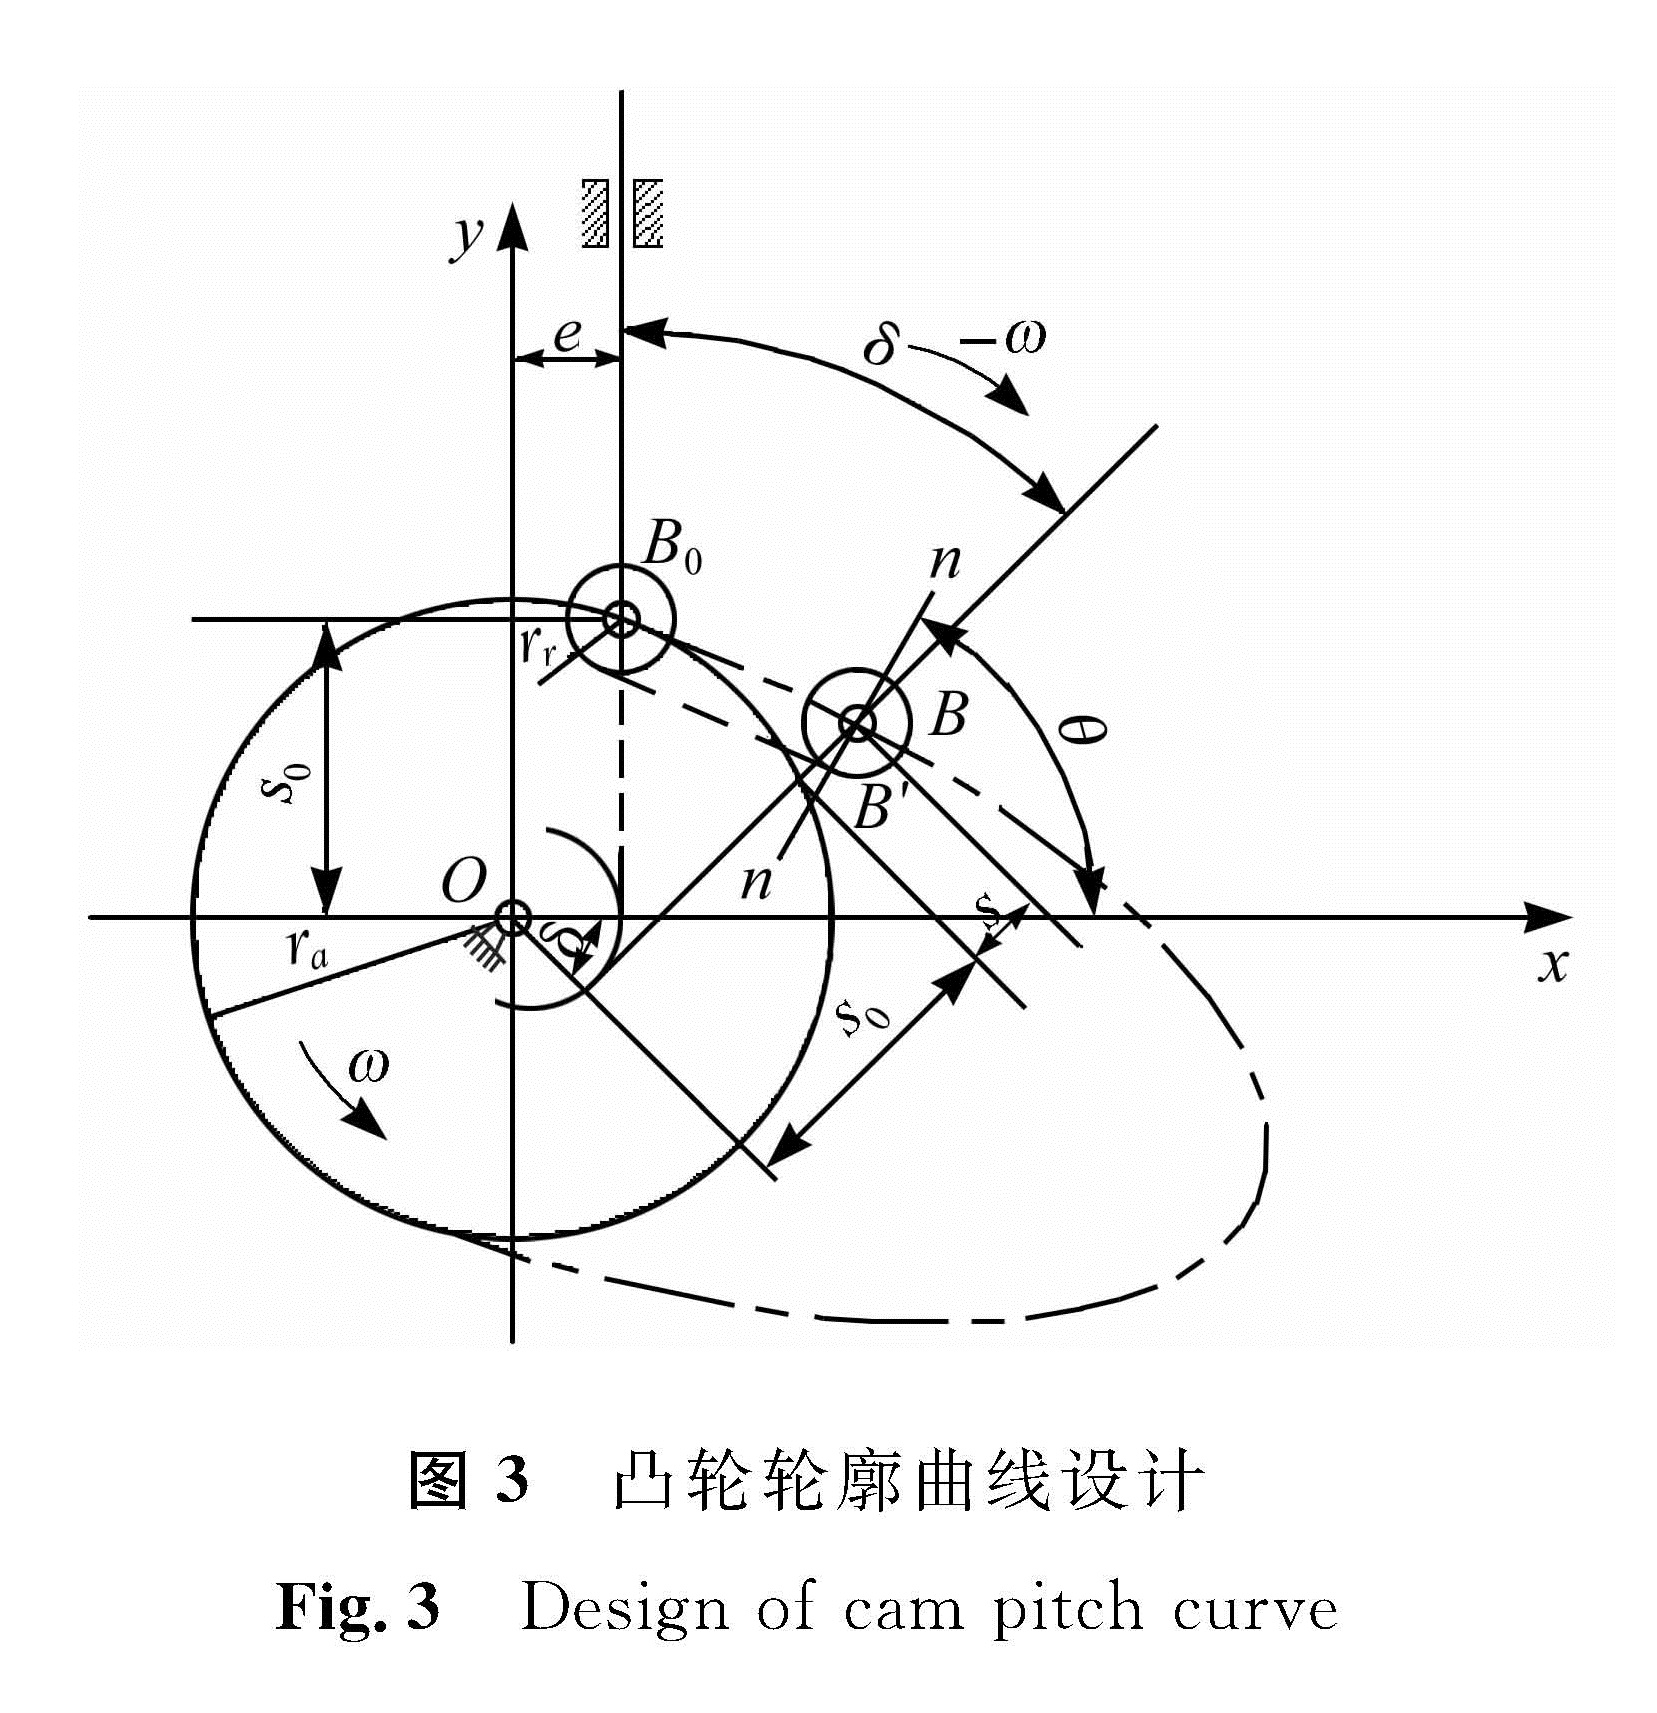 图3 凸轮轮廓曲线设计<br/>Fig.3 Design of cam pitch curve